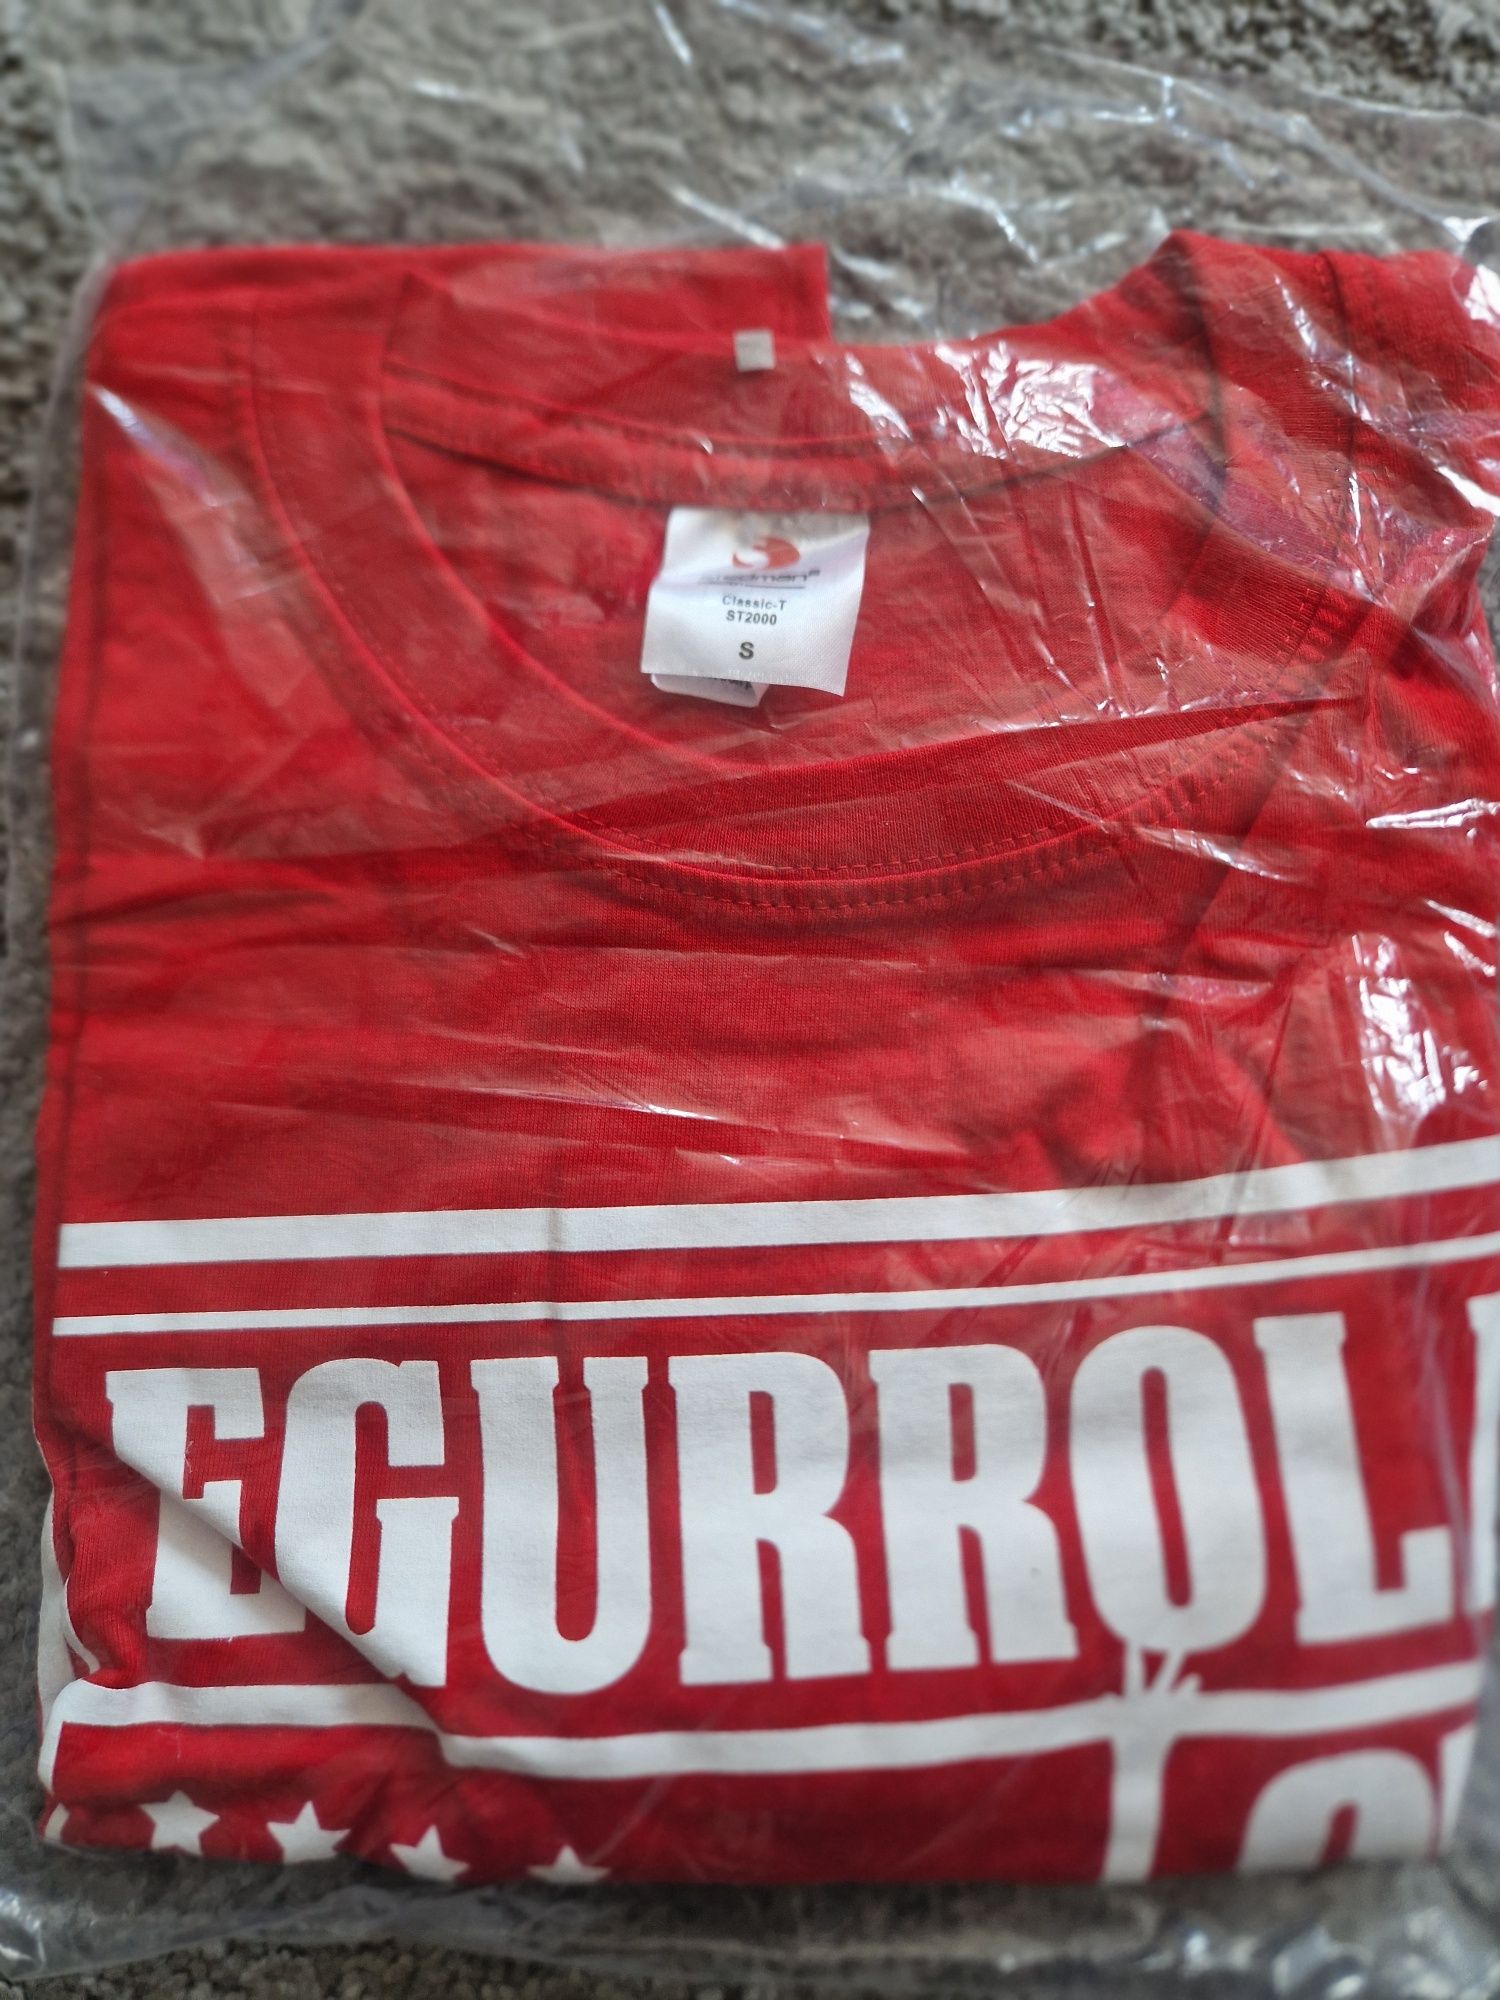 Leginsy,  2 szt T-shirt Egurrola